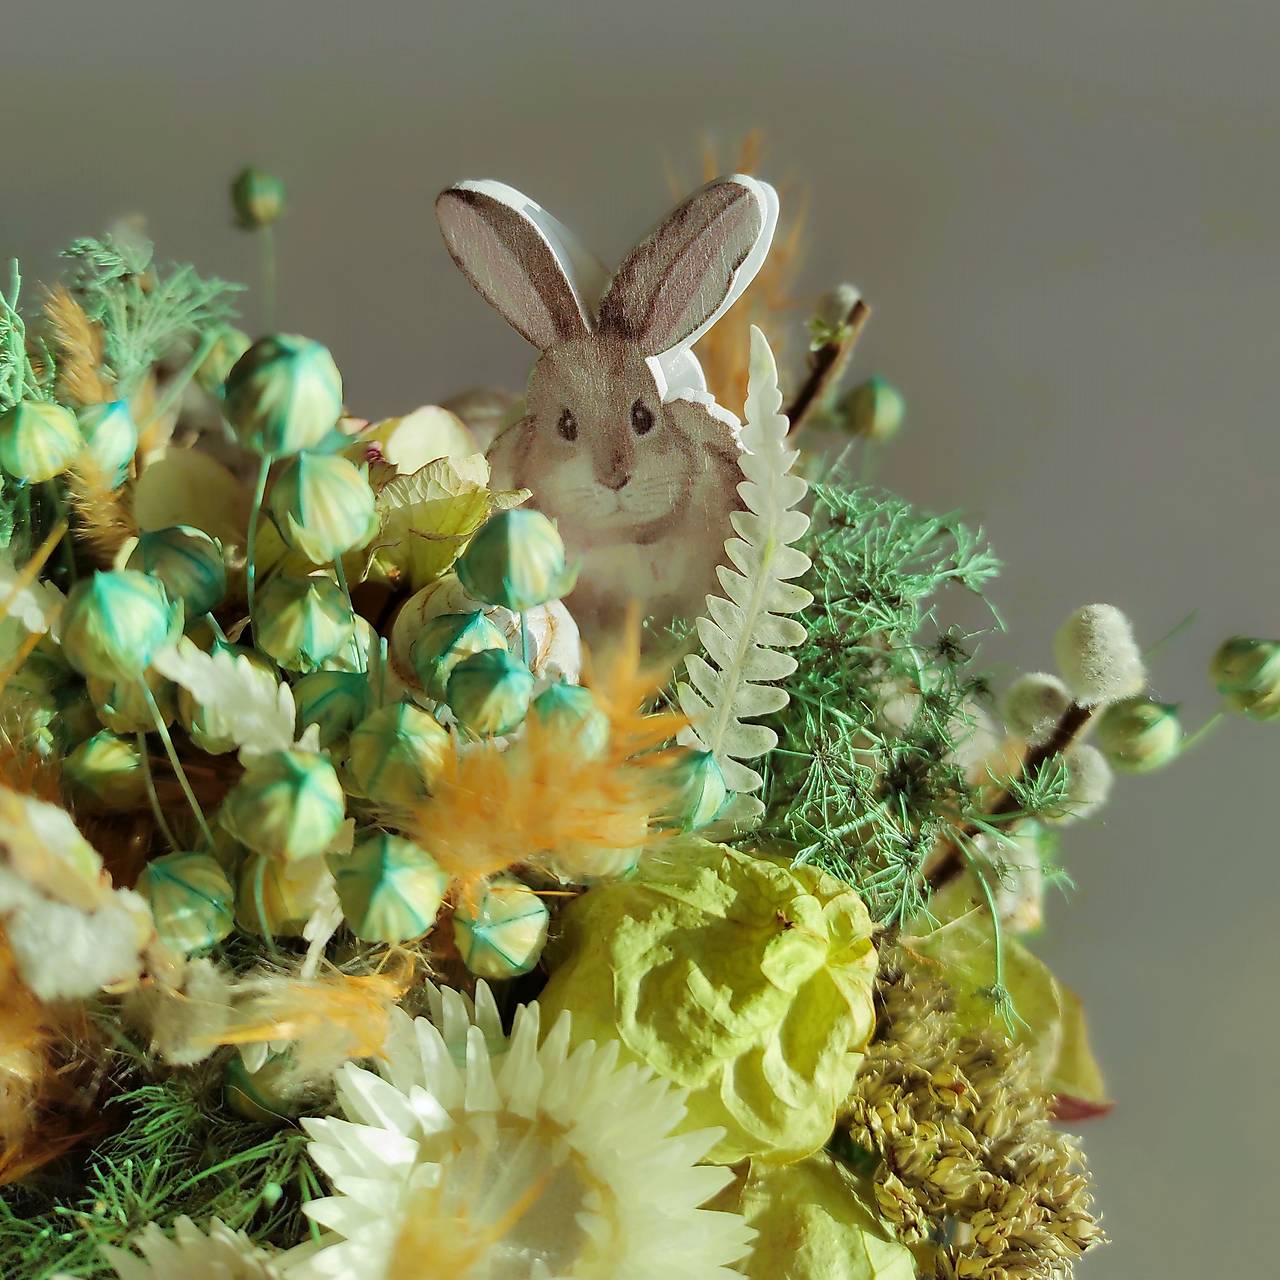 Jarný aranžmán zo sušených kvetov v miske zo skla so zajačikom